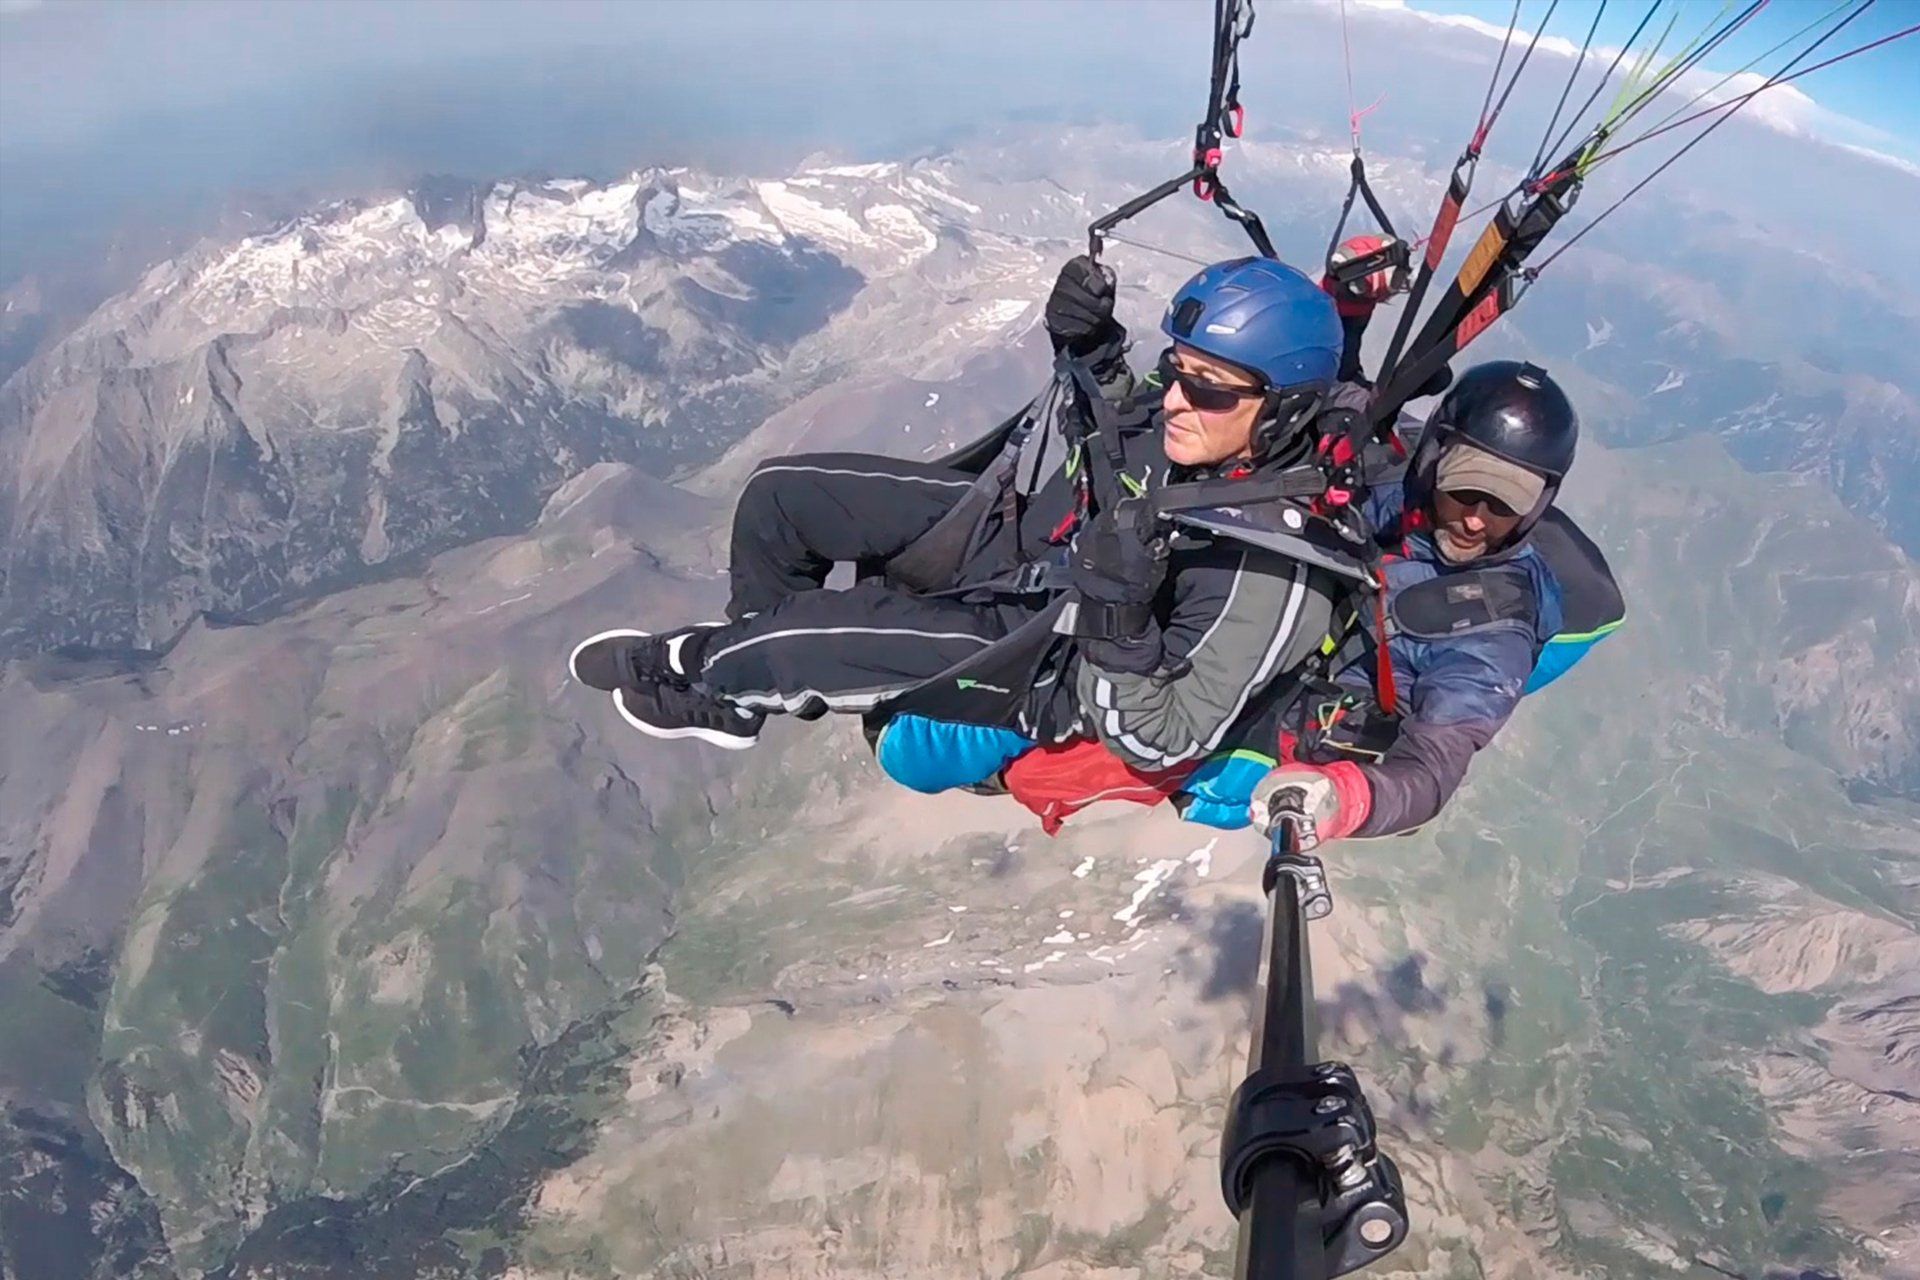 Sobrevolando con parapente biplaza el pico Aneto a mas de 5000 metros de altura